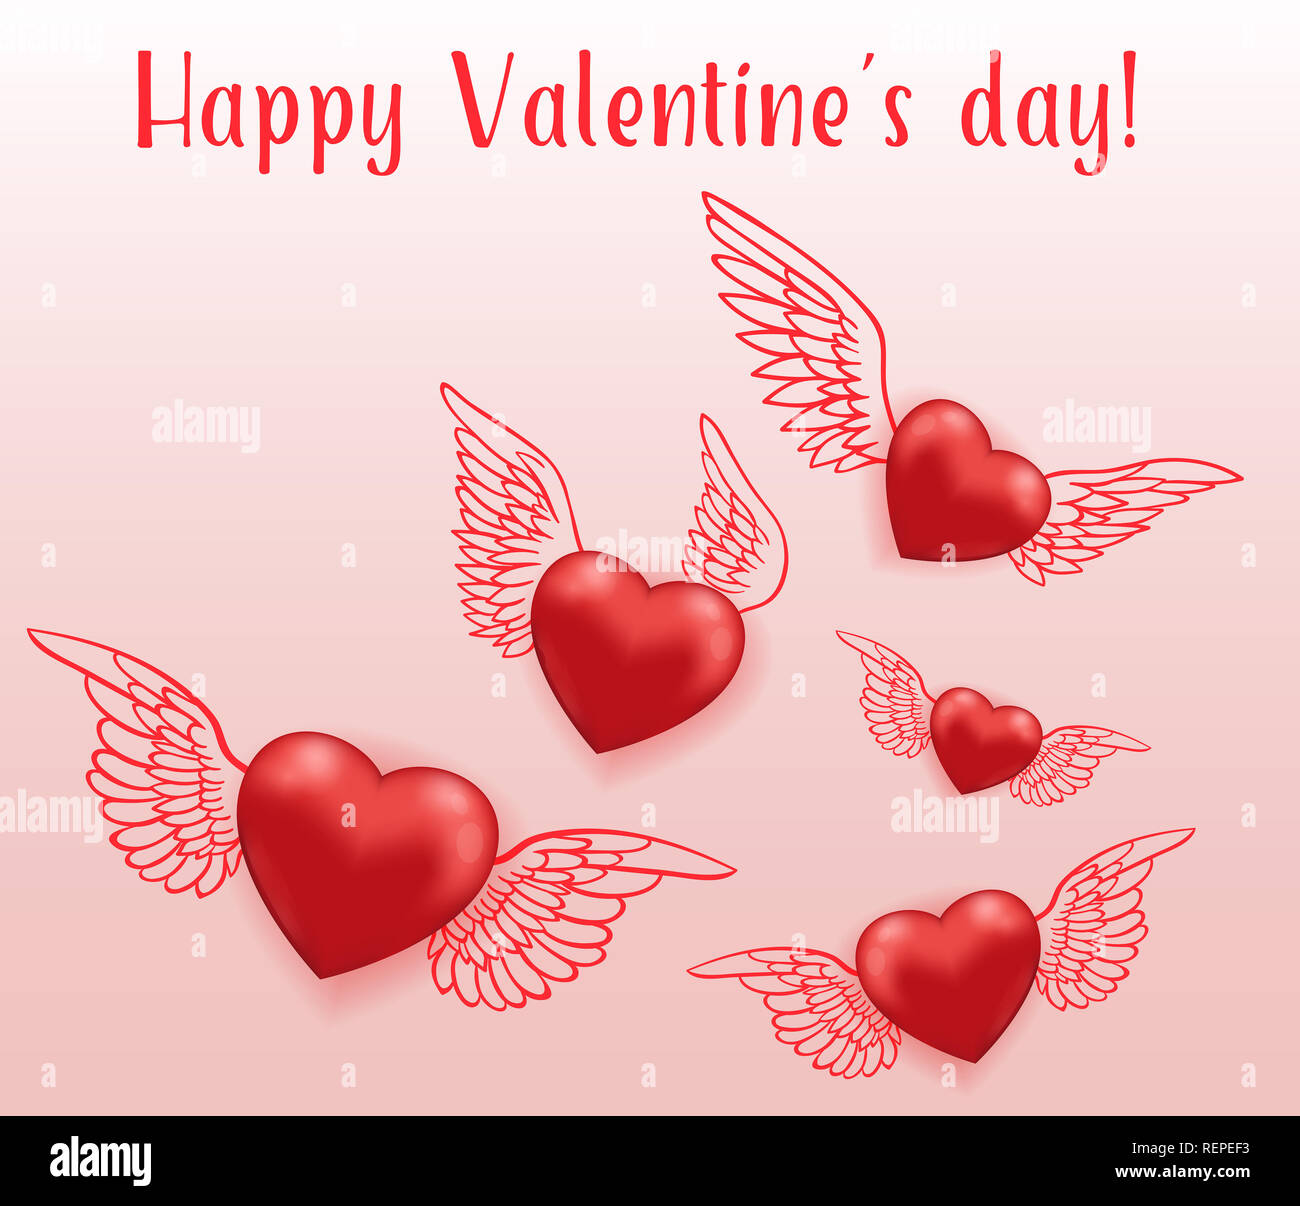 Rotes Herz mit Flügeln fliegen in der Luft. Grußkarte für Valentinstag. Hand gezeichnet Abbildung. Stockfoto